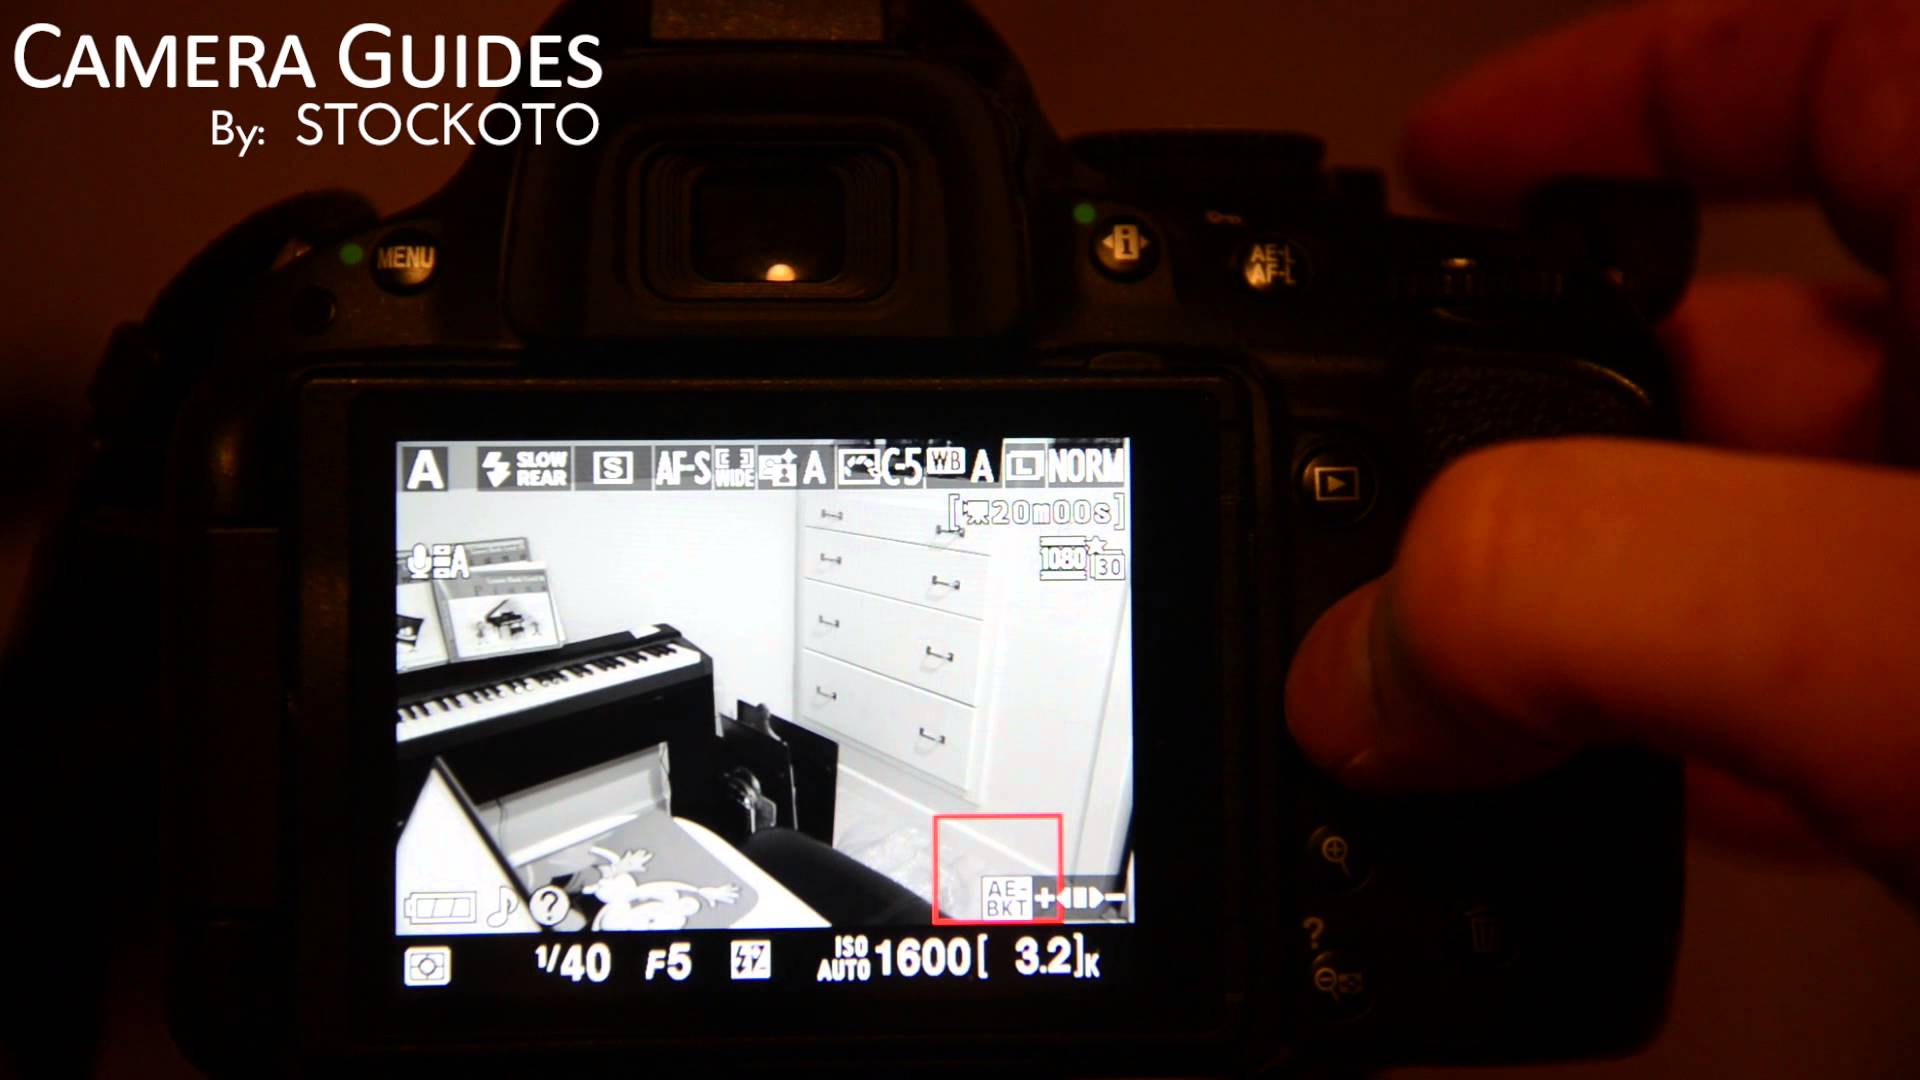 How to turn on Live View mode on a Nikon D5100 , D5200, D5300